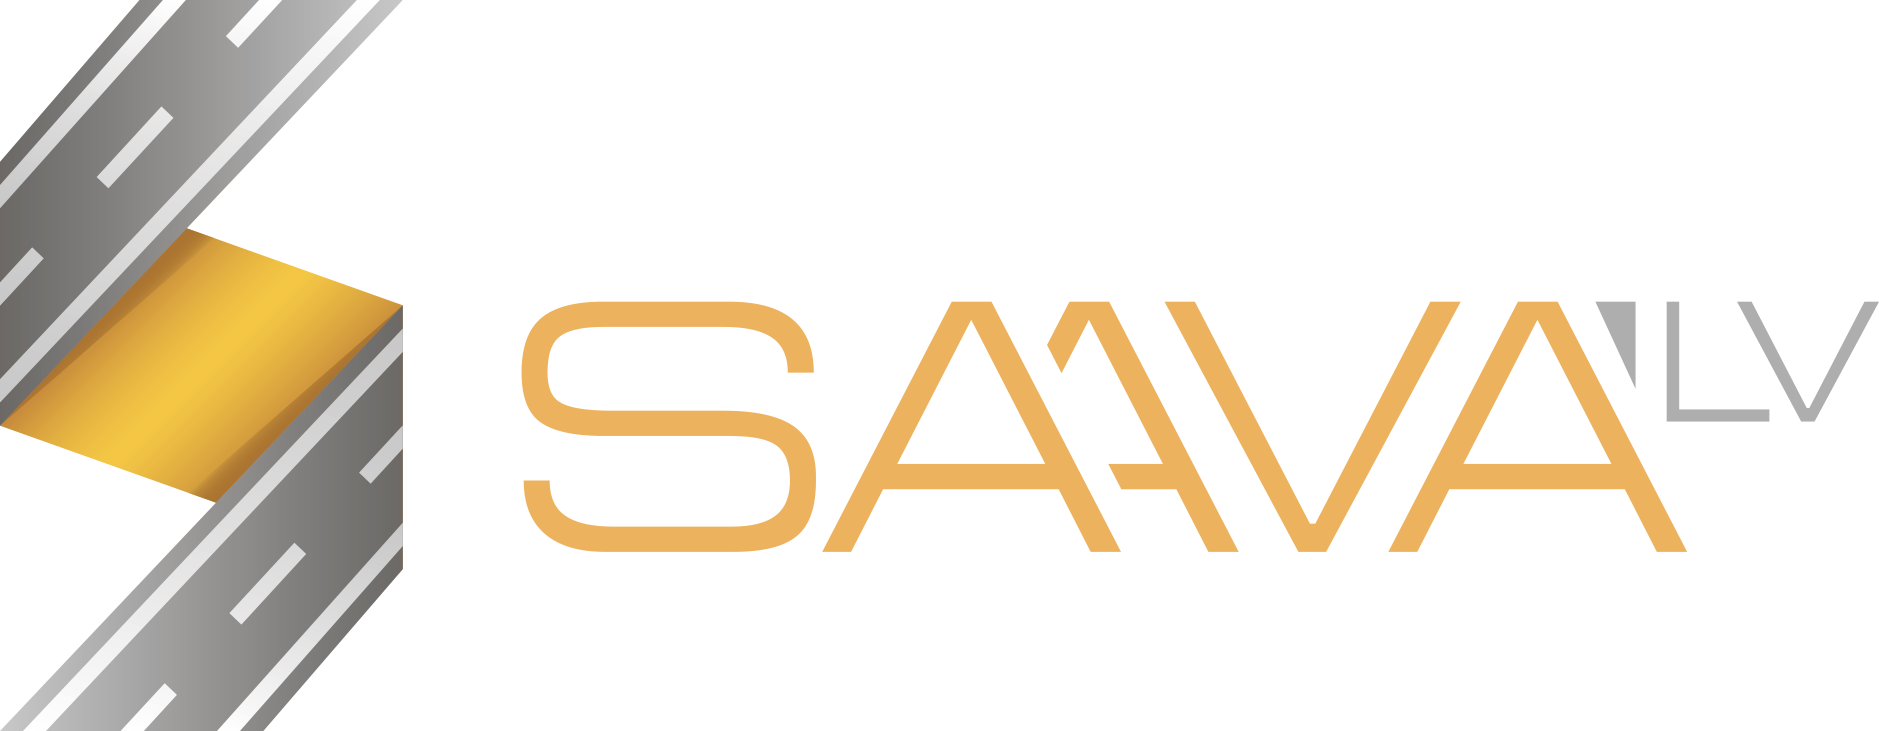 Saava-LV logo